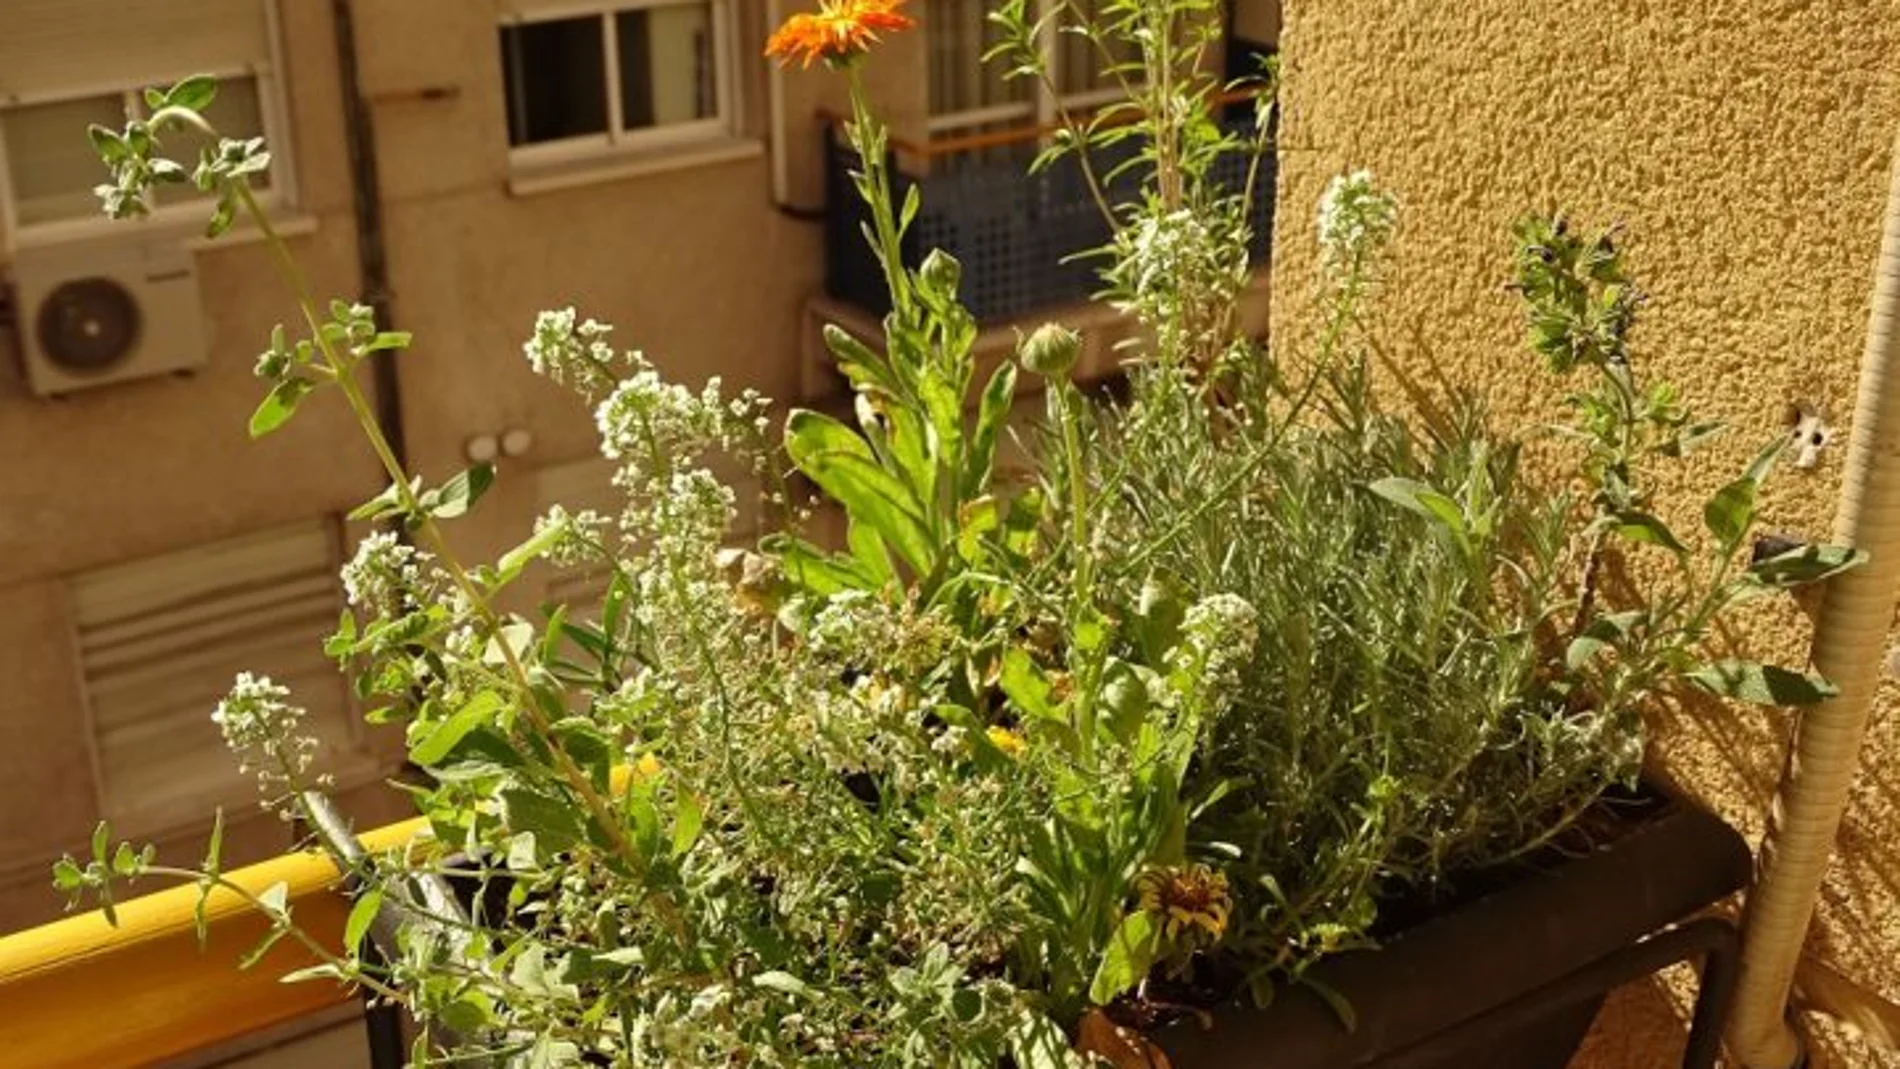 Una jardinera en el balcón es el método más efectivo para repeler que los insectos entren en nuestros hogares